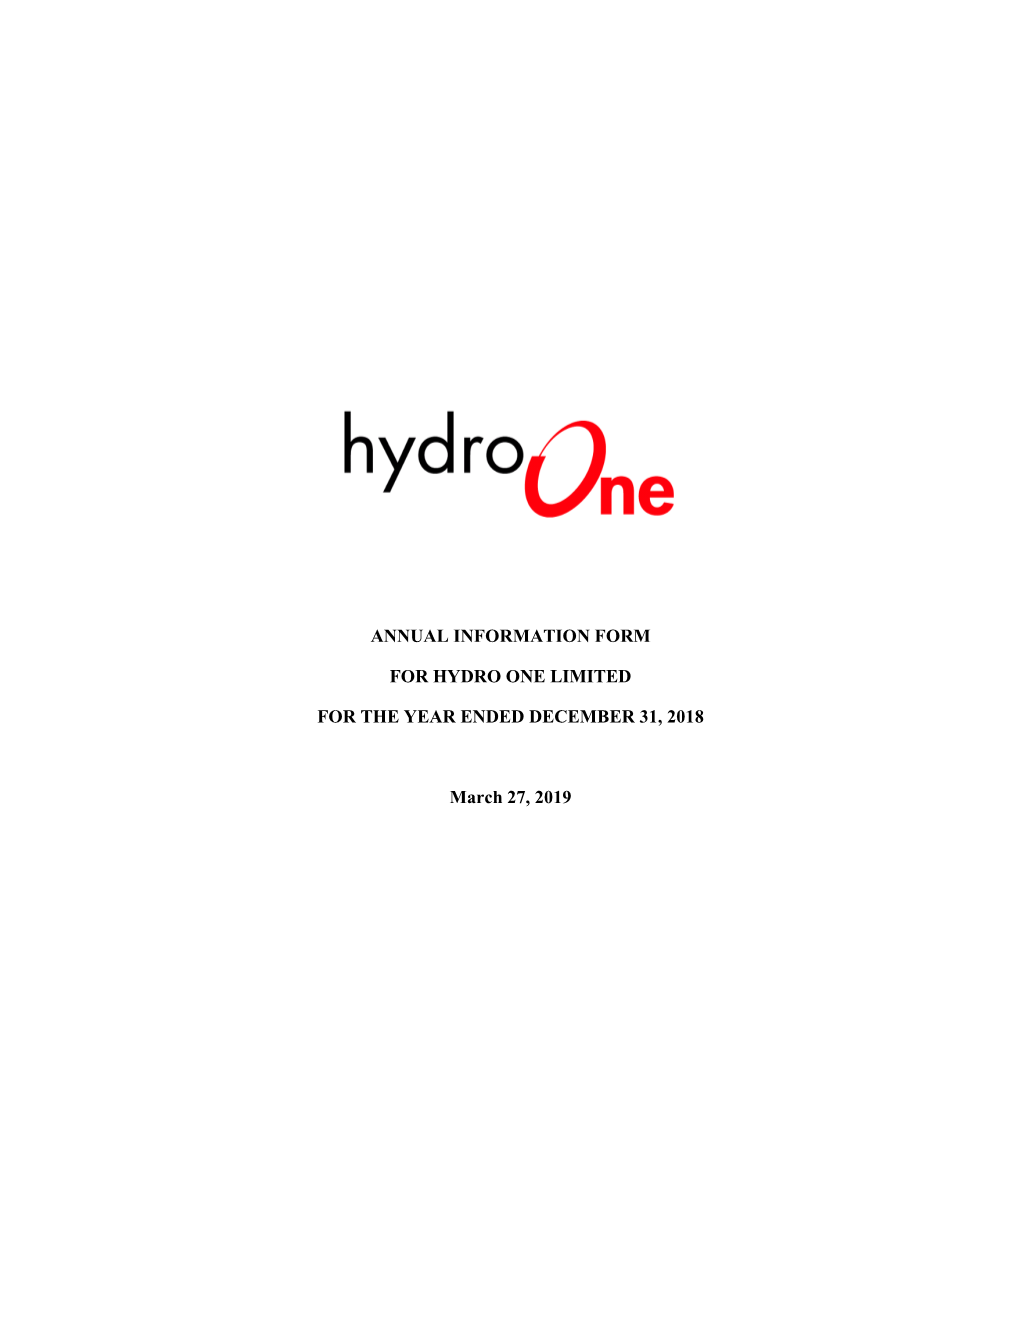 Hydro One Limited AIF 2018.Pdf